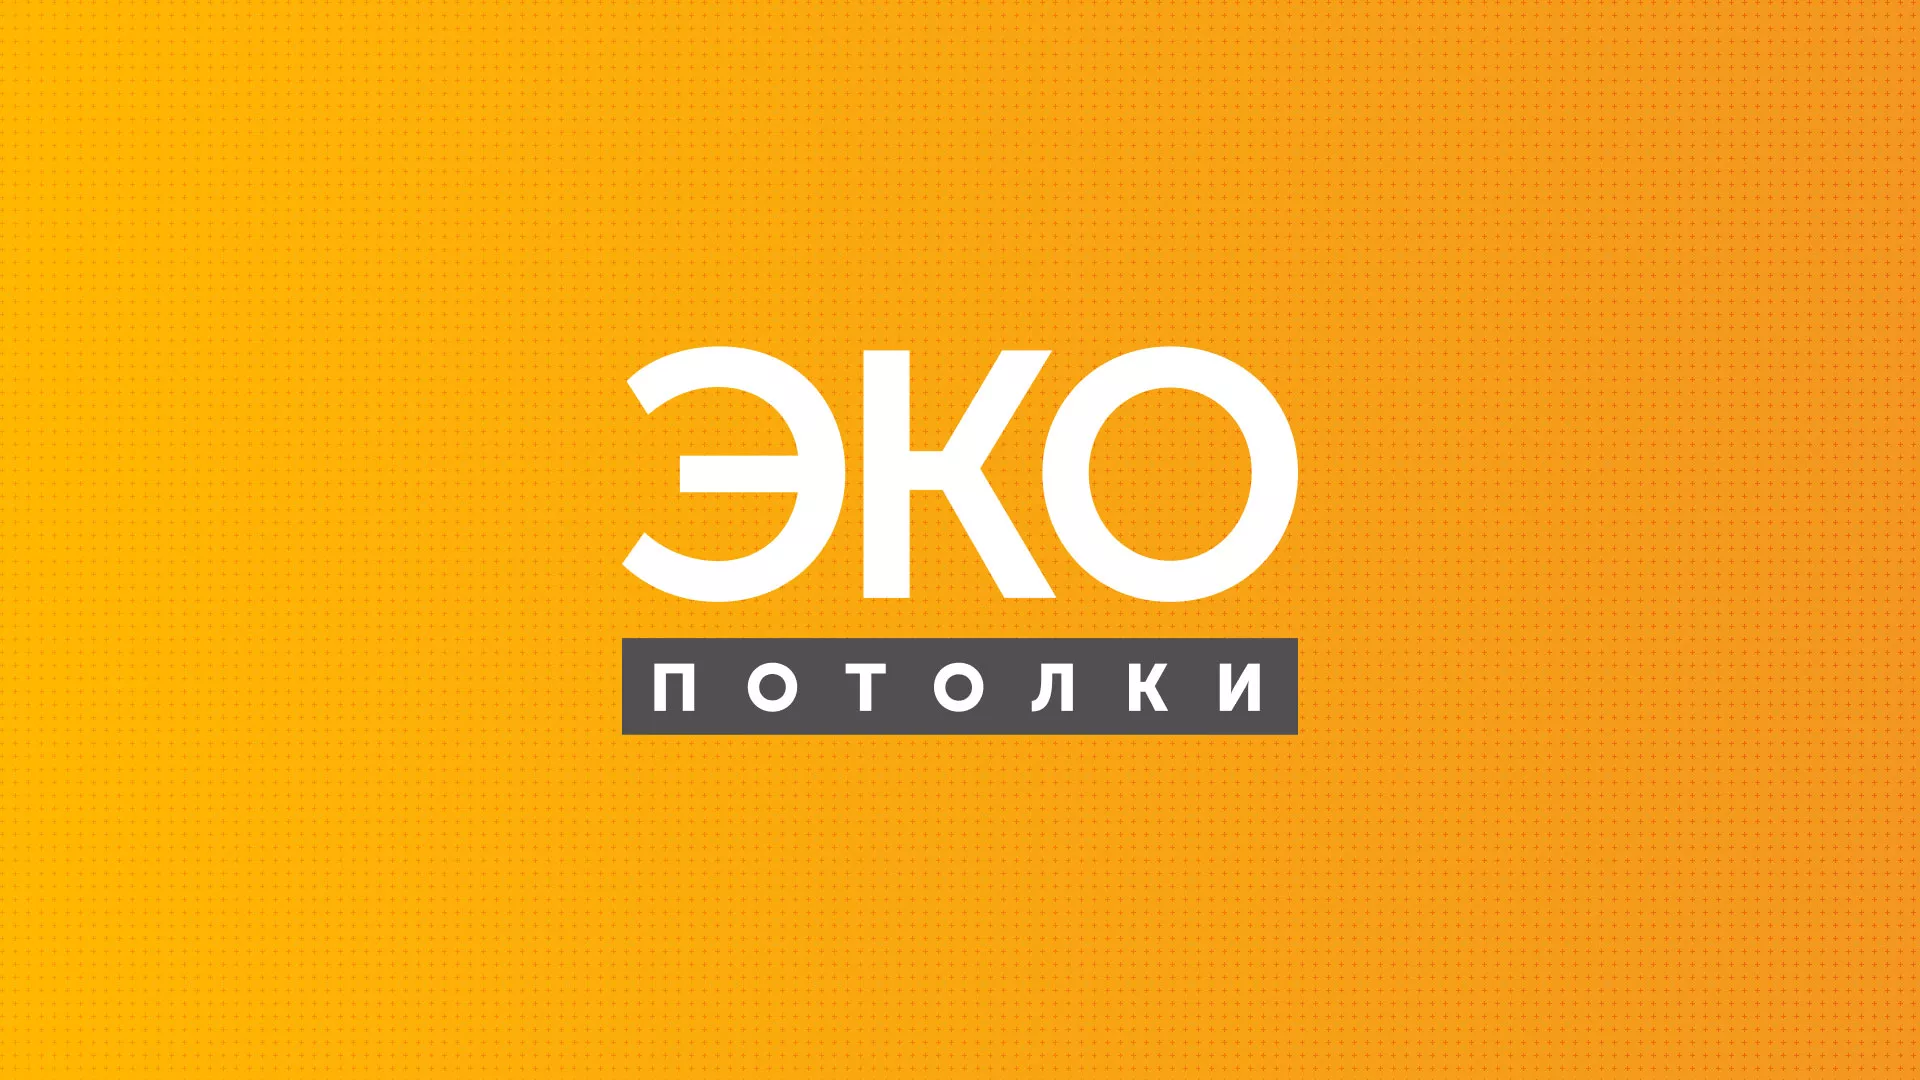 Разработка сайта по натяжным потолкам «Эко Потолки» в Рыбинске